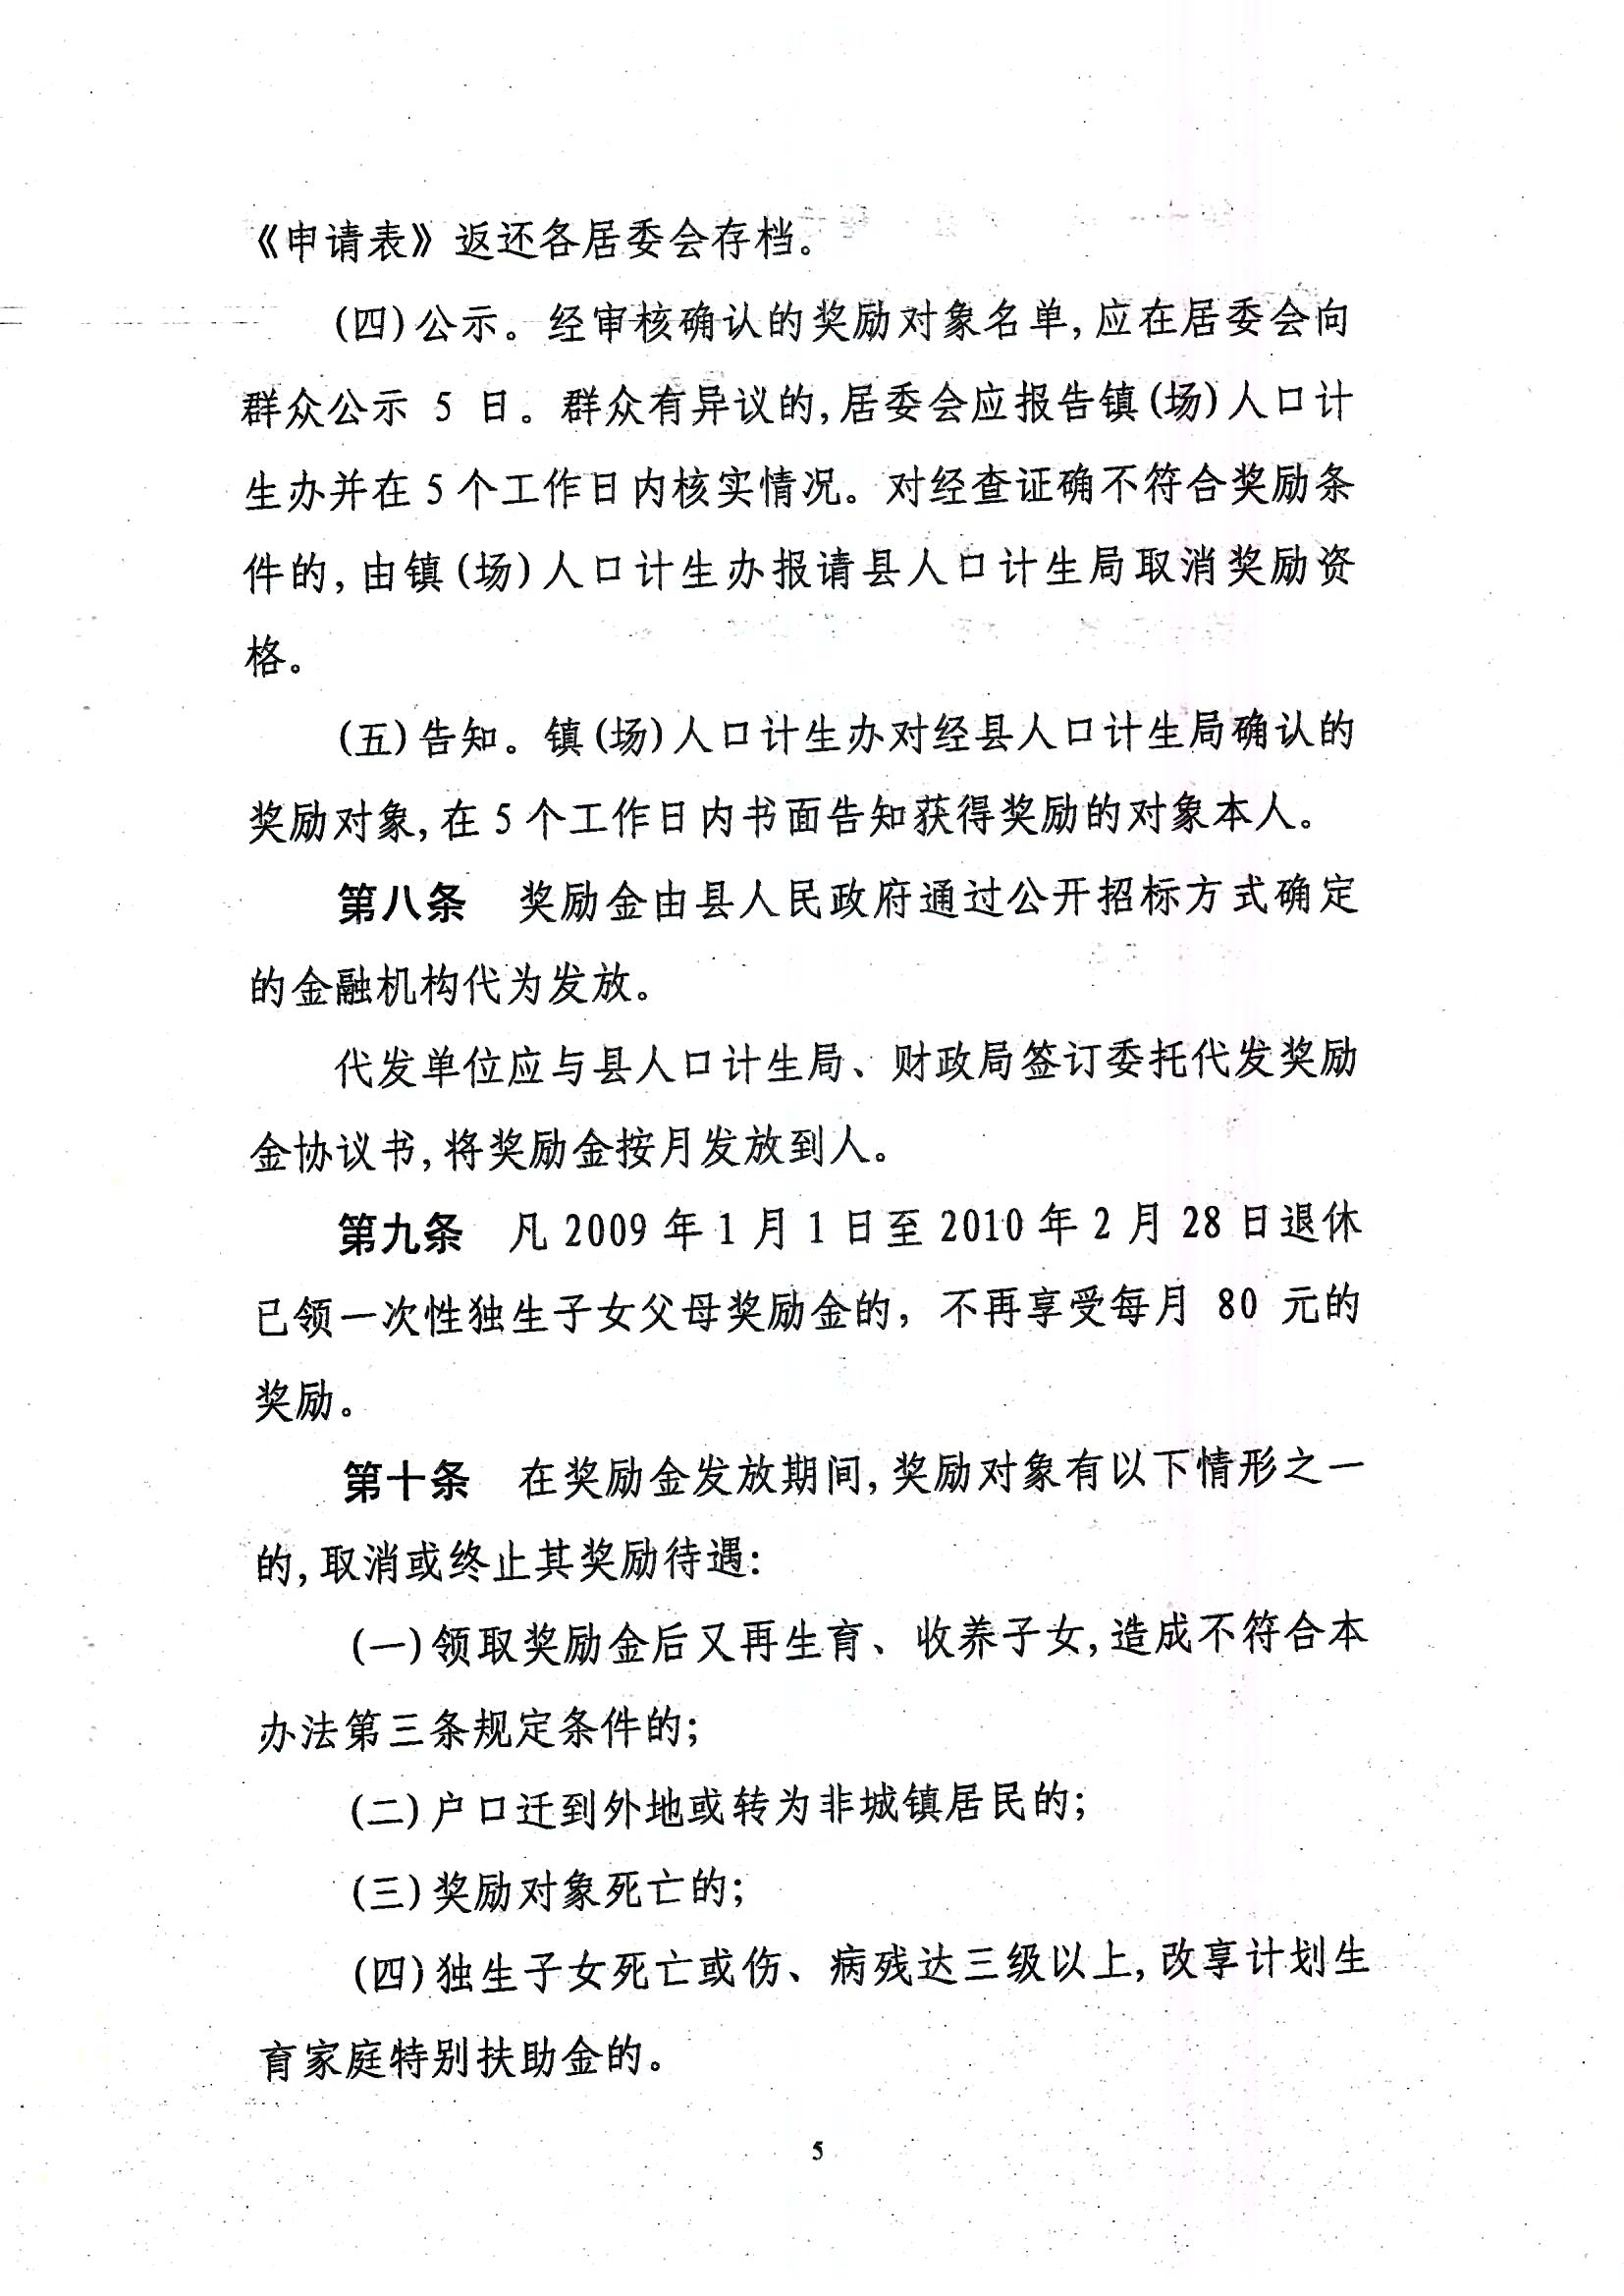 印发丰顺县城镇独生子女父母计划生育奖励办法的通知_页面_5.jpg